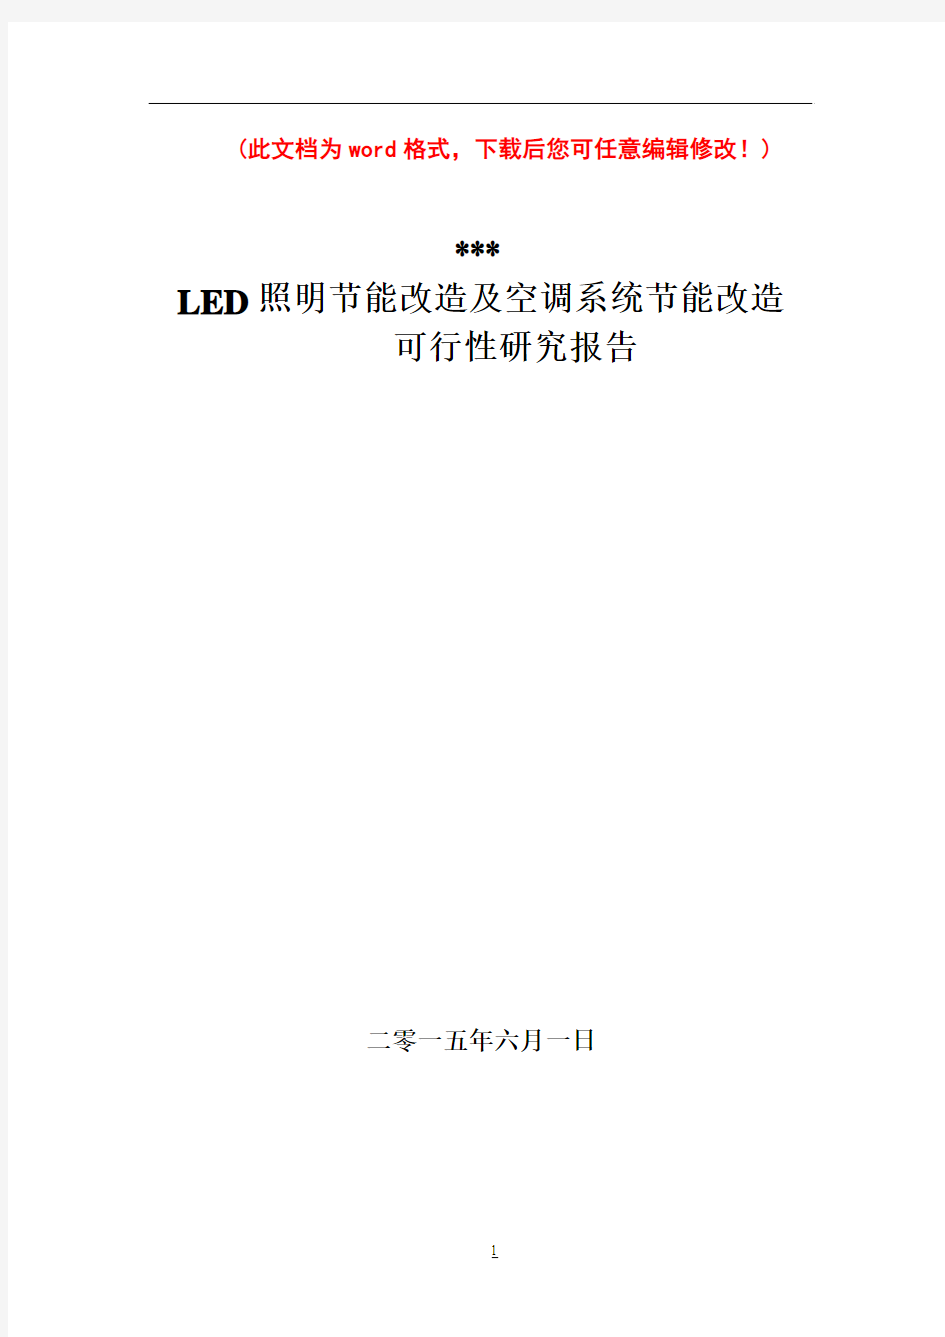 (强烈推荐)LED照明节能及空调节能改造项目研究报告